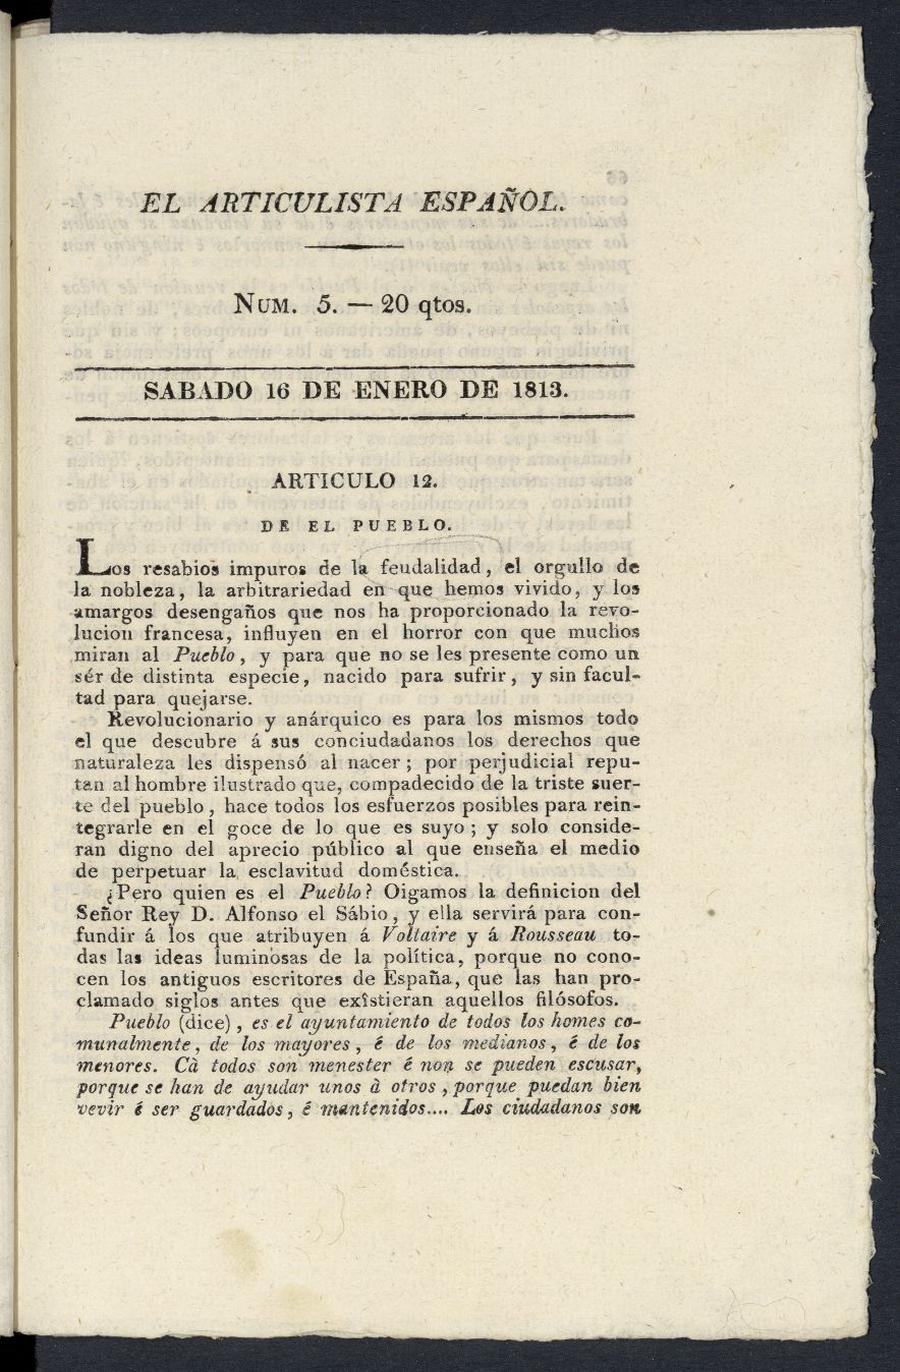 El Articulista Espaol, sbado 16 de enero de 1813